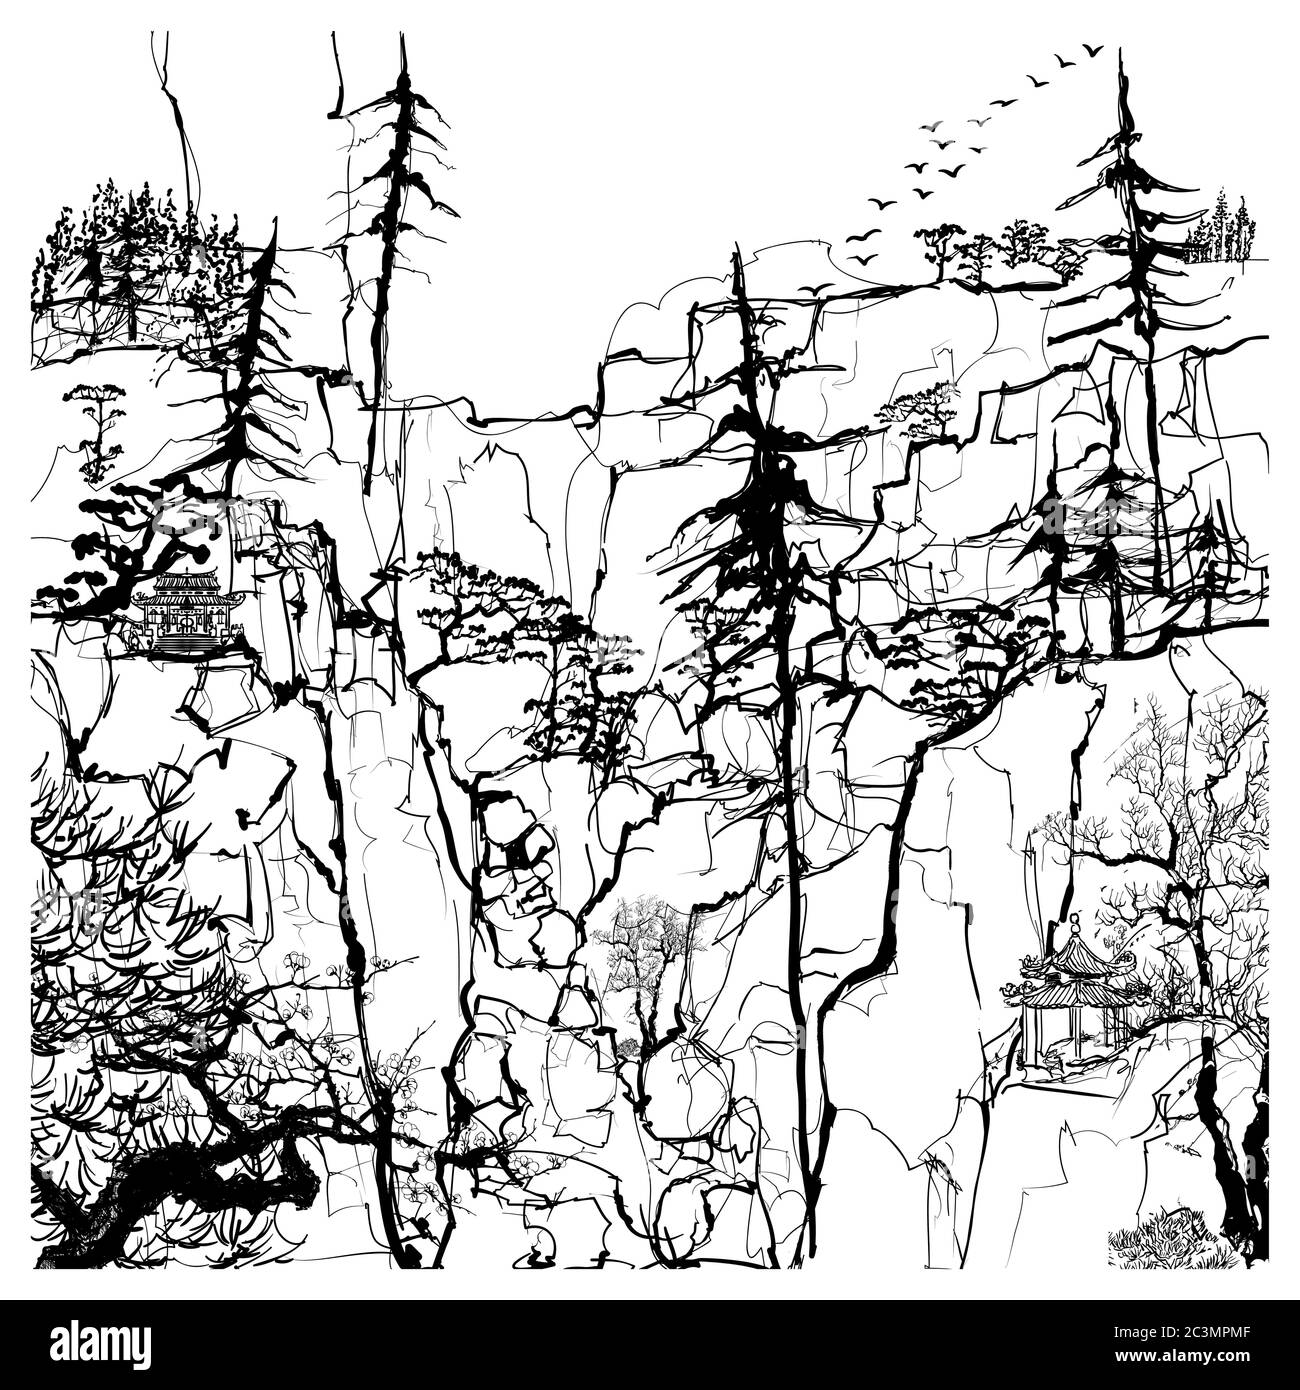 Fantasievolle chinesische Landschaft mit Bäumen und Bergen - Vektor-Illustration (ideal für den Druck auf Stoff oder Papier, Poster oder Tapete, Haus decora Stock Vektor